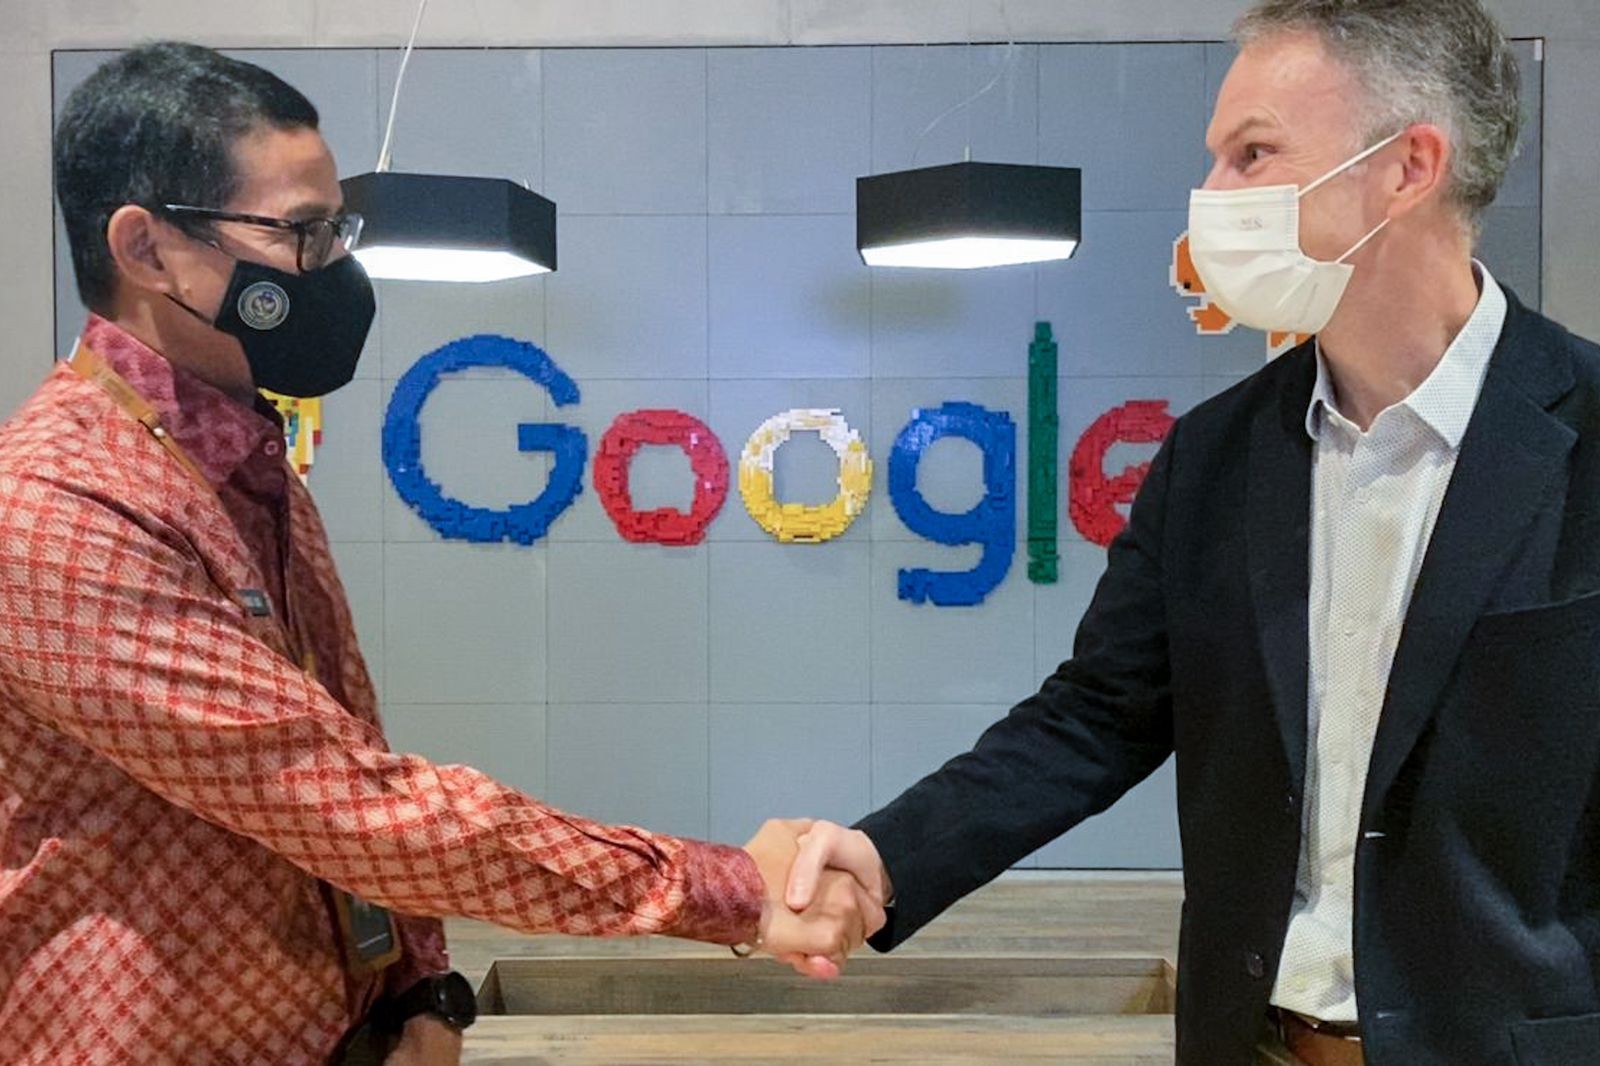 Sandiaga Uno mengunjungi Kantor Google Asia Pacific di Singapura untuk menindaklanjuti inisiatif kerja sama dan pembangunan ekonomi kreatif di Indonesia.